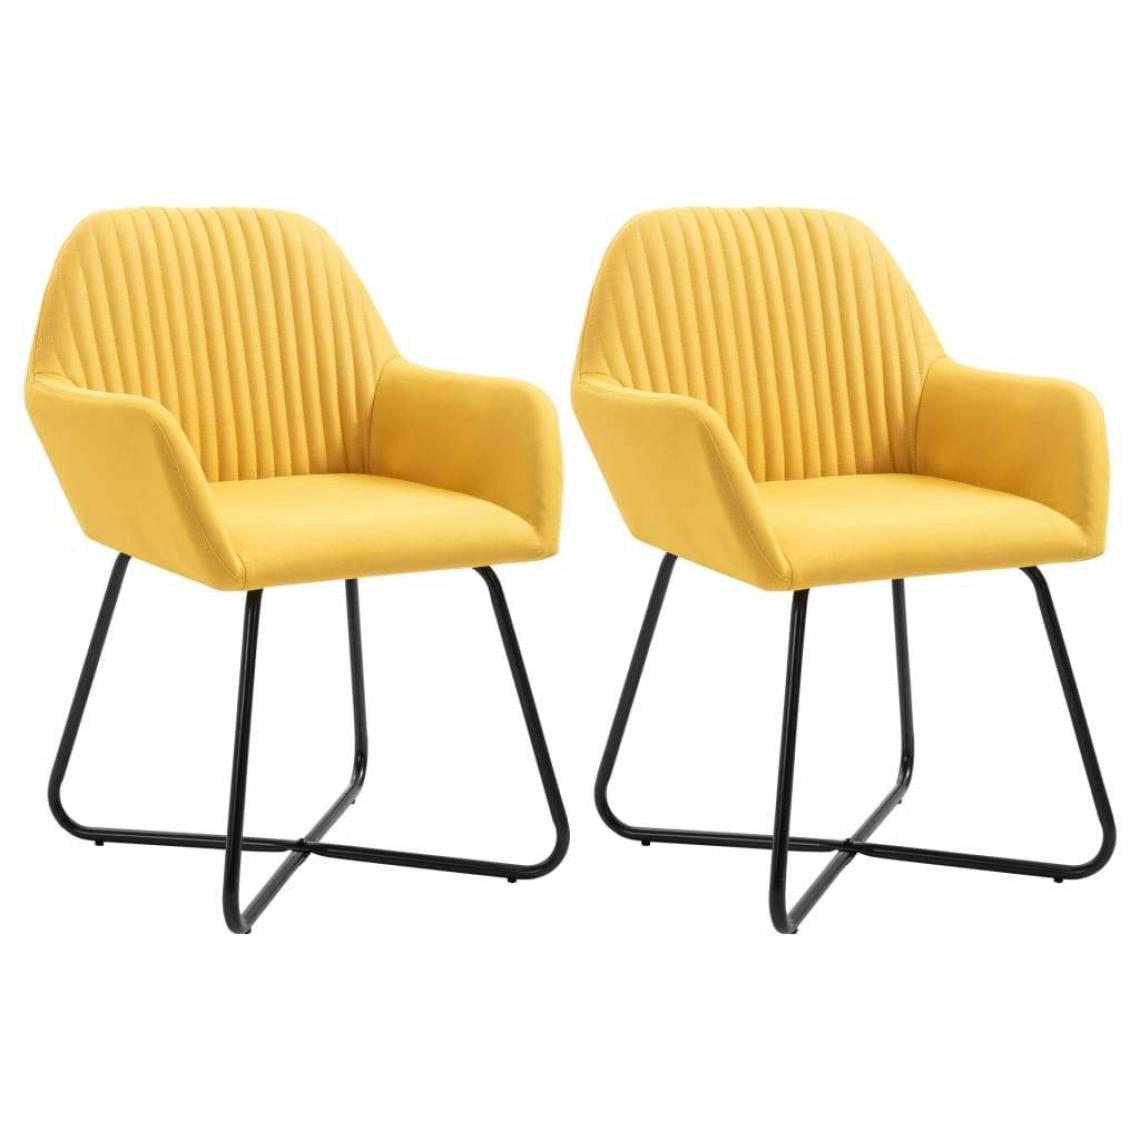 Decoshop26 - Lot de 2 chaises de salle à manger cuisine confortable stable et moderne en tissu jaune CDS020643 - Chaises